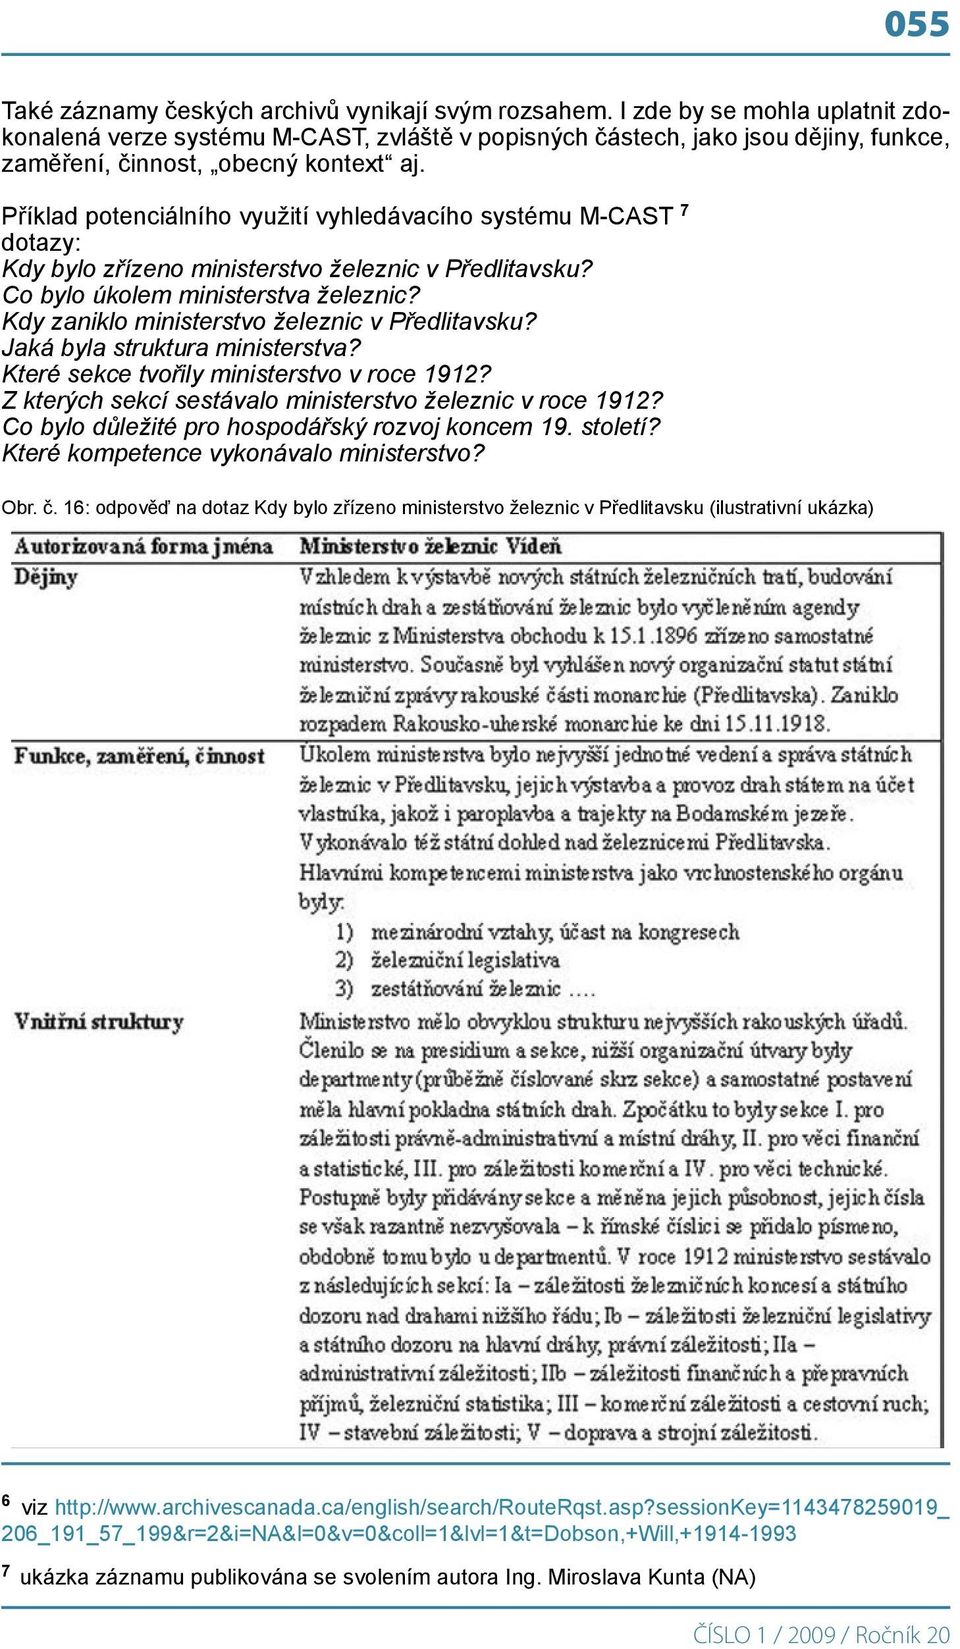 Příklad potenciálního využití vyhledávacího systému M-CAST 7 dotazy: Kdy bylo zřízeno ministerstvo železnic v Předlitavsku? Co bylo úkolem ministerstva železnic?